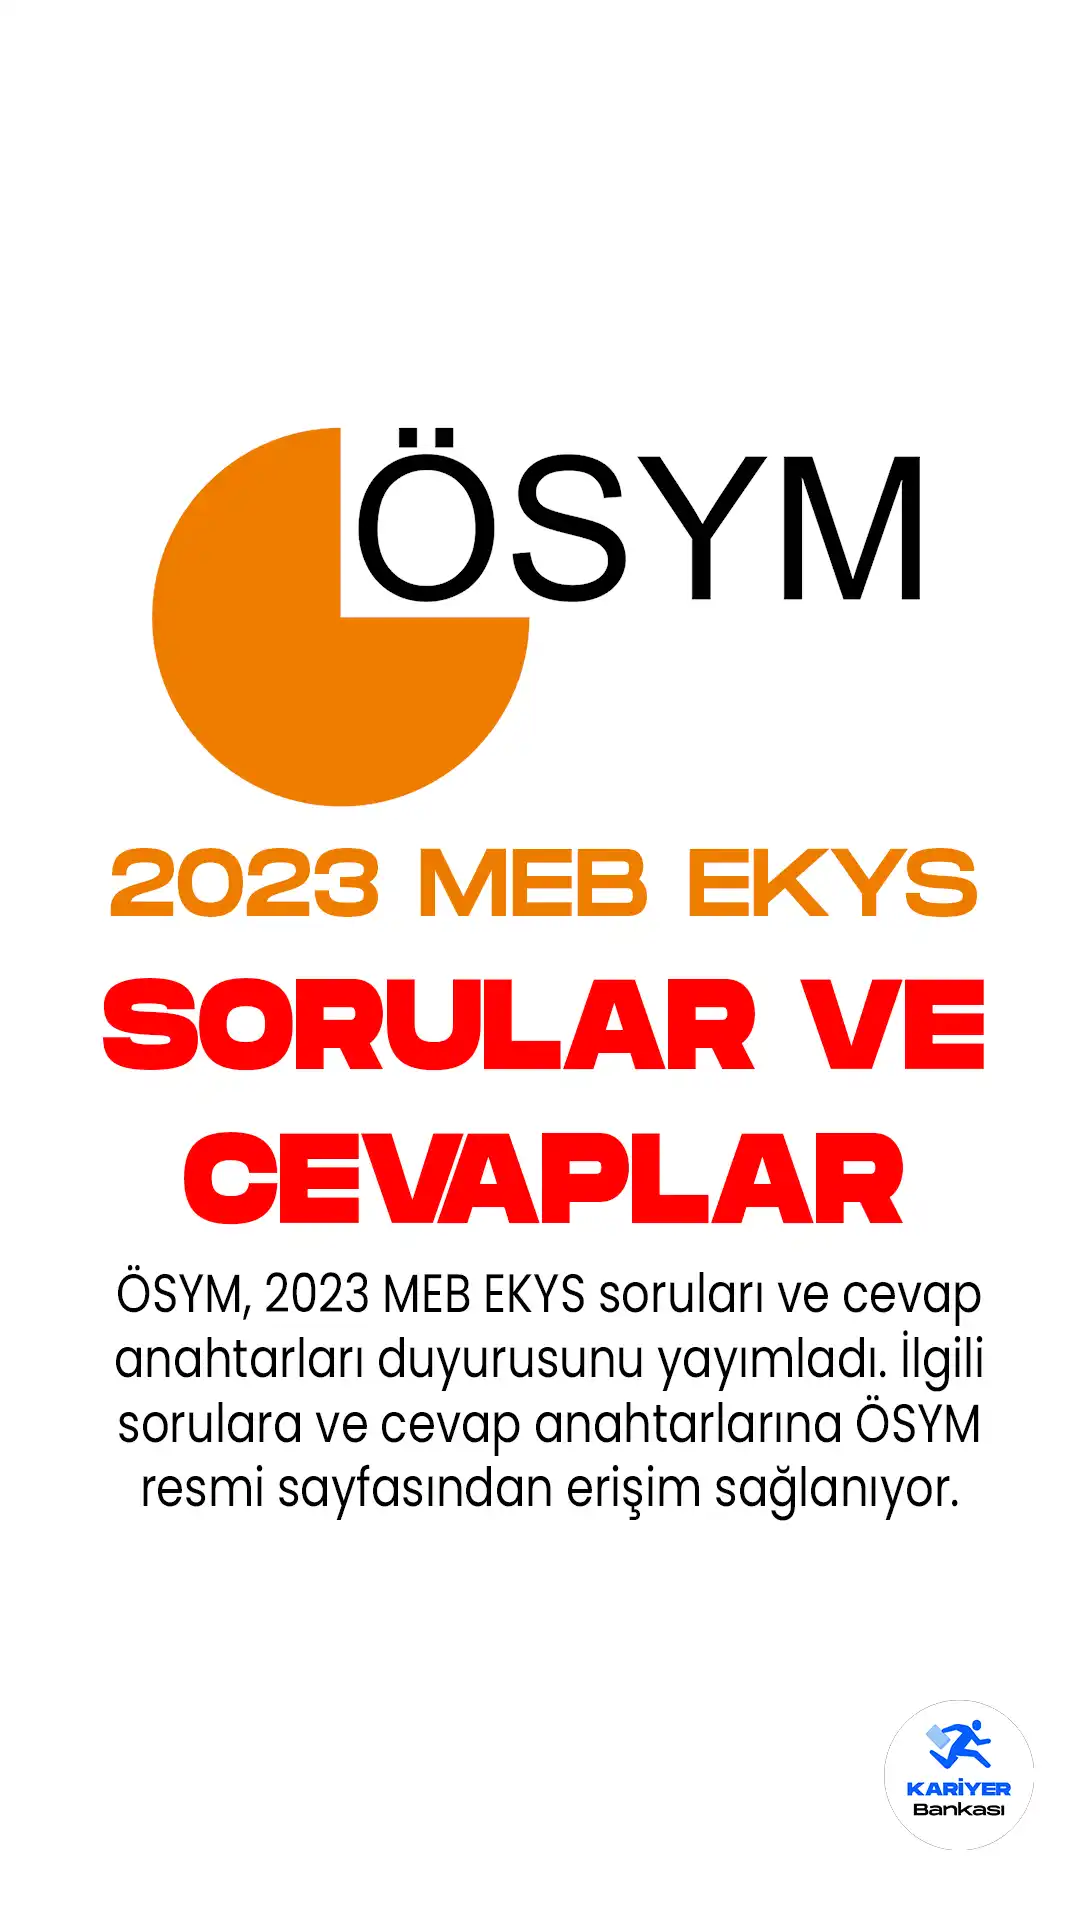 ÖSYM, 2023 MEB EKYS soruları ve cevap anahtarları duyurusunu yayımladı. Sorulara ve cevap anahtarlarına ÖSYM sayfasından erişilebilir.